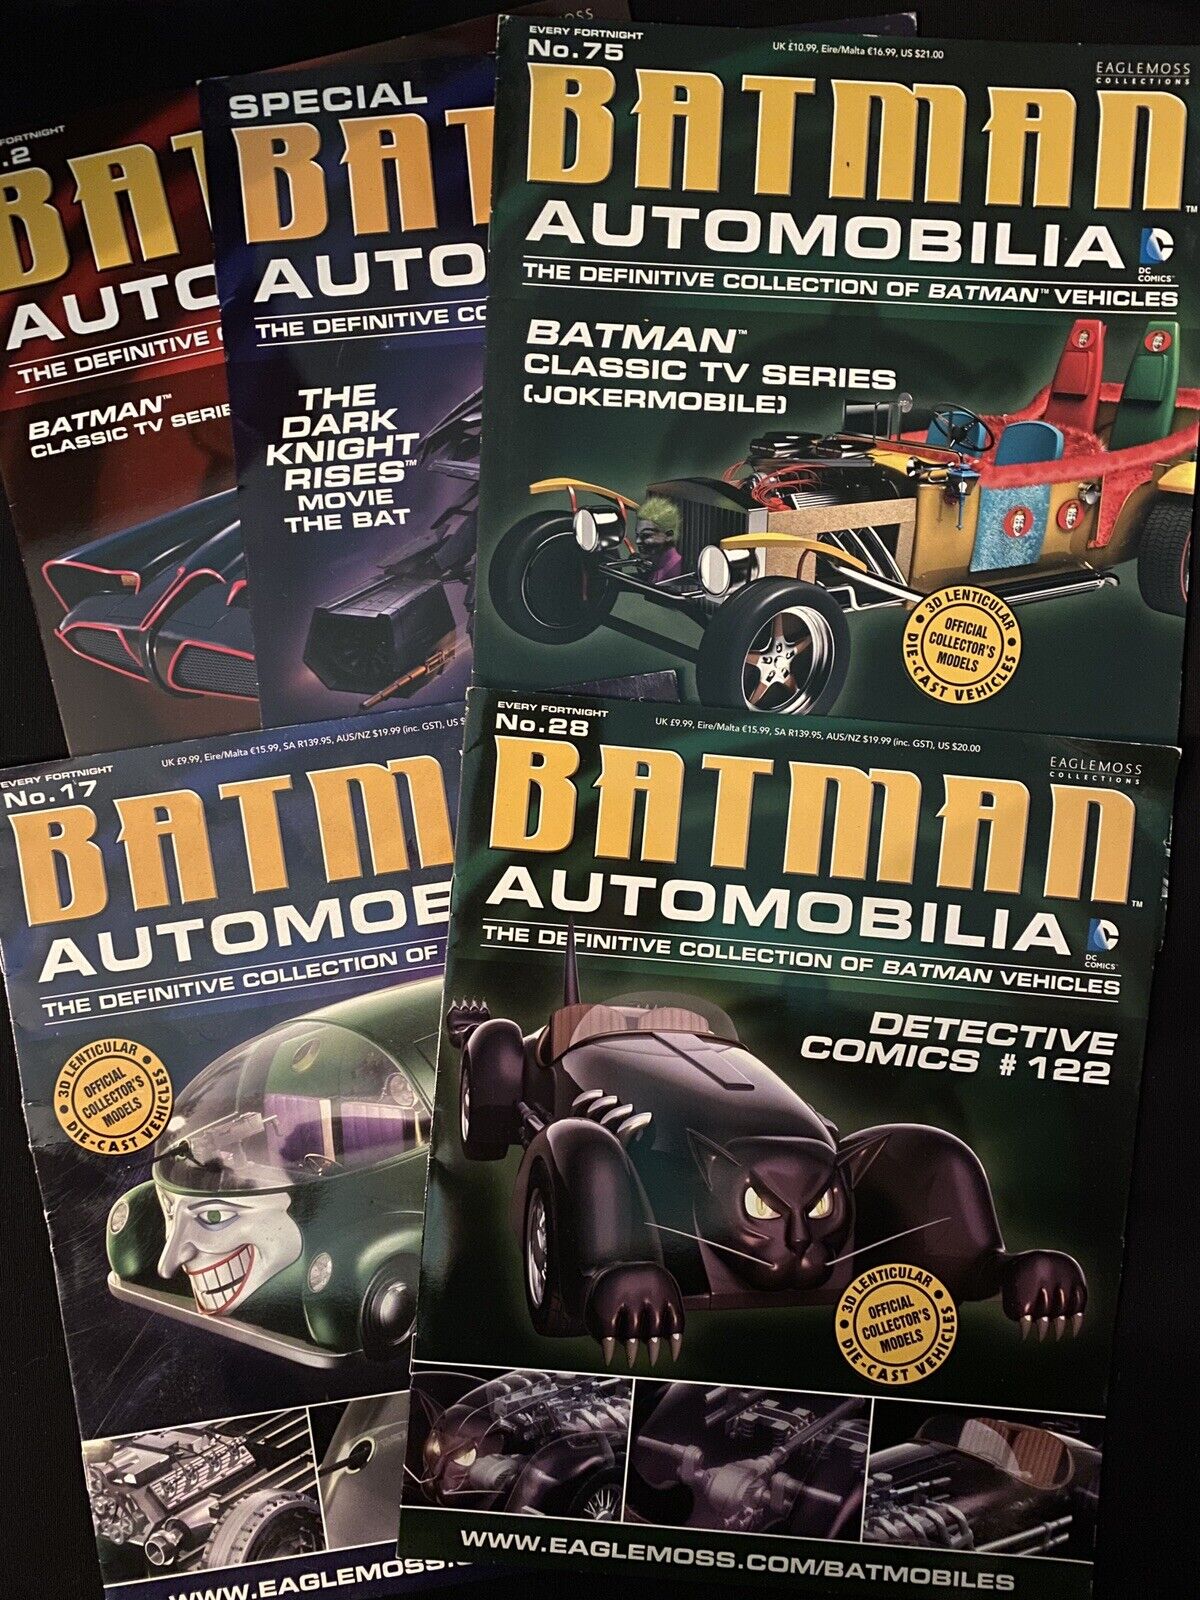 LOT of Eaglemoss Automobilia Batman Magazines Issues 2, 17, 28, 75 + Special